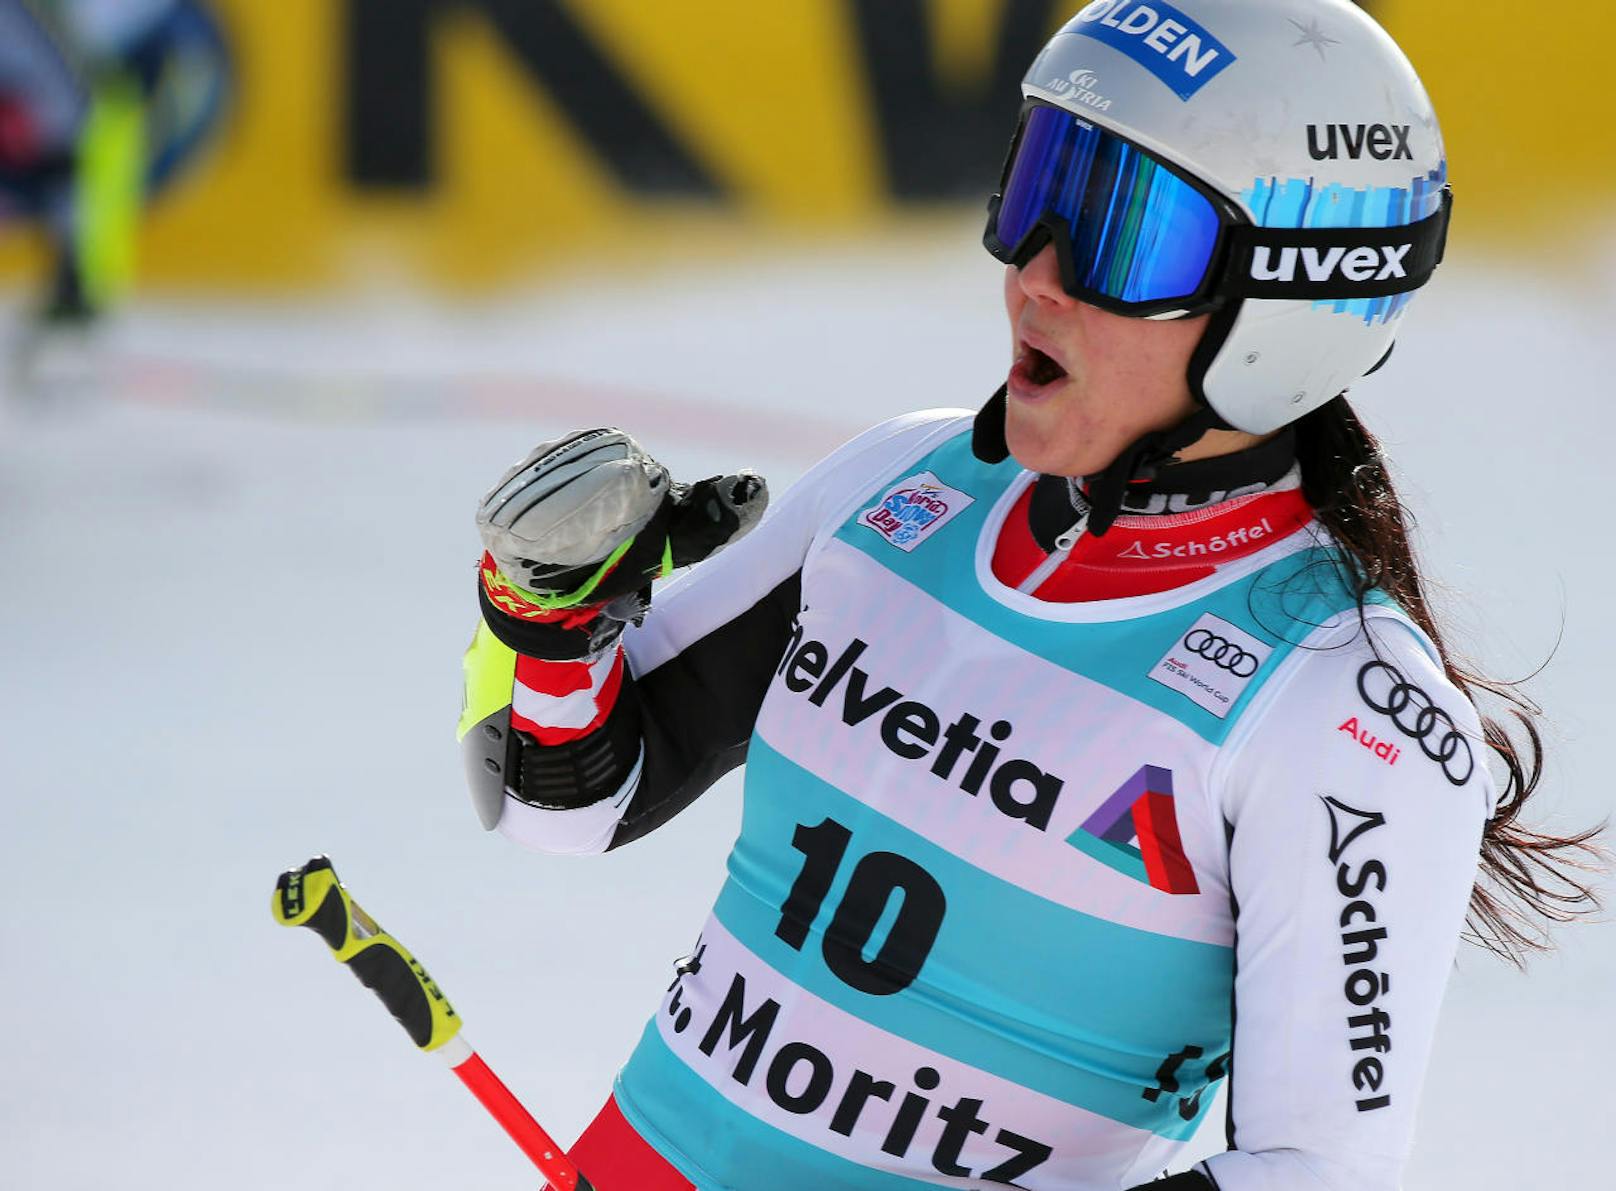 Sensation aus rot-weiß-roter Sicht beim Parallelslalom in St. Moritz. Franziska Gritsch stürzt im Halbfinale, holt dann Platz drei - ihren ersten Stockerlplatz. "Ich kann es gar nicht glauben", meint die 22-Jährige. Der Sieg geht an Petra Vlhova aus der Slowakei.